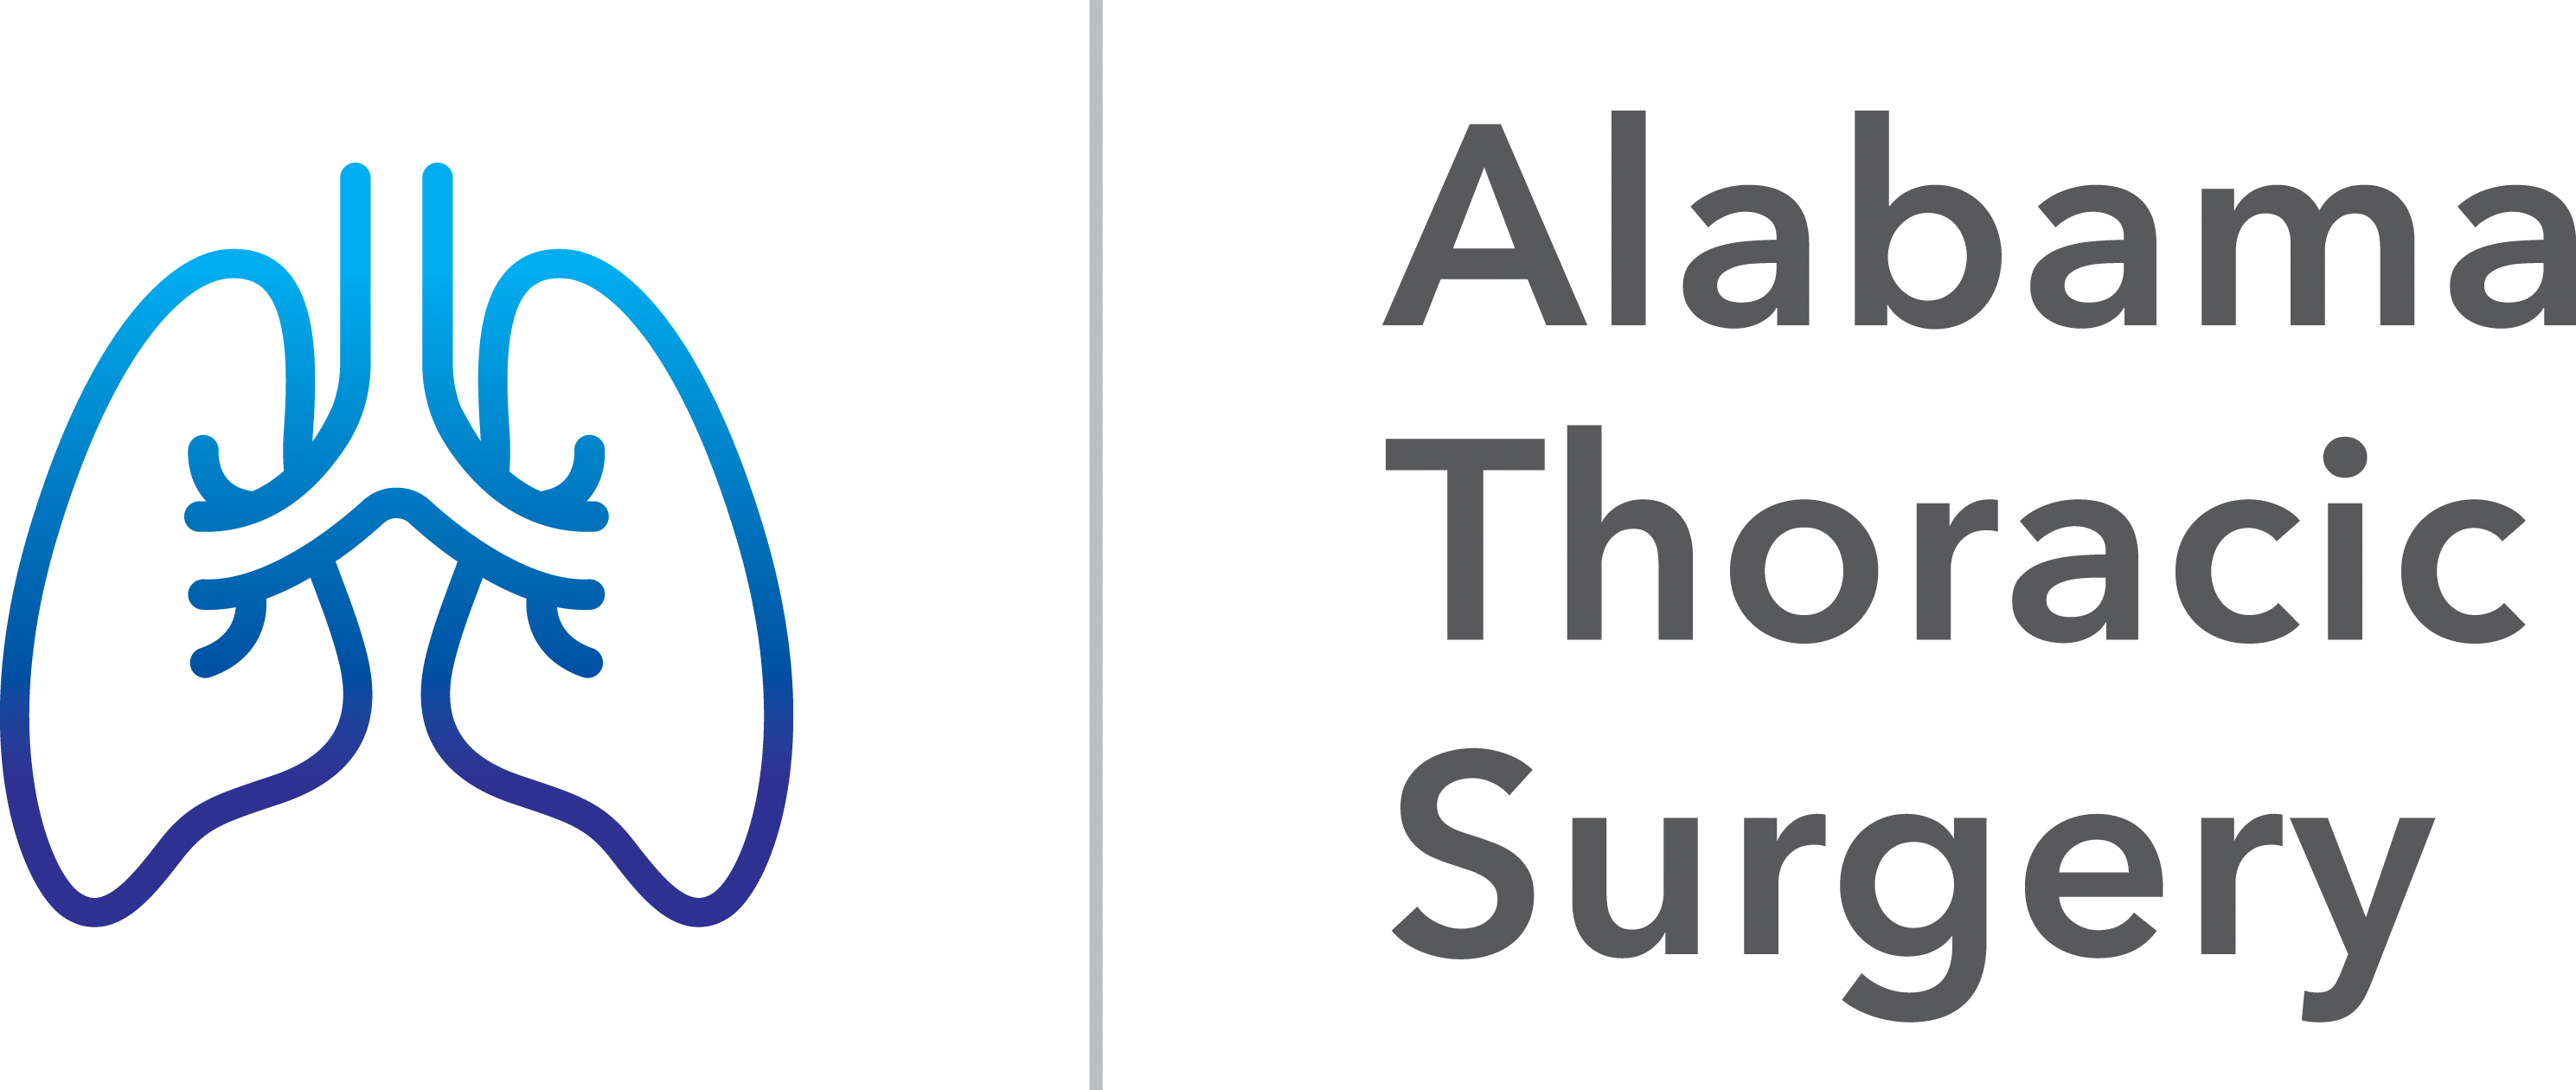 Alabama Thoracic Surgery